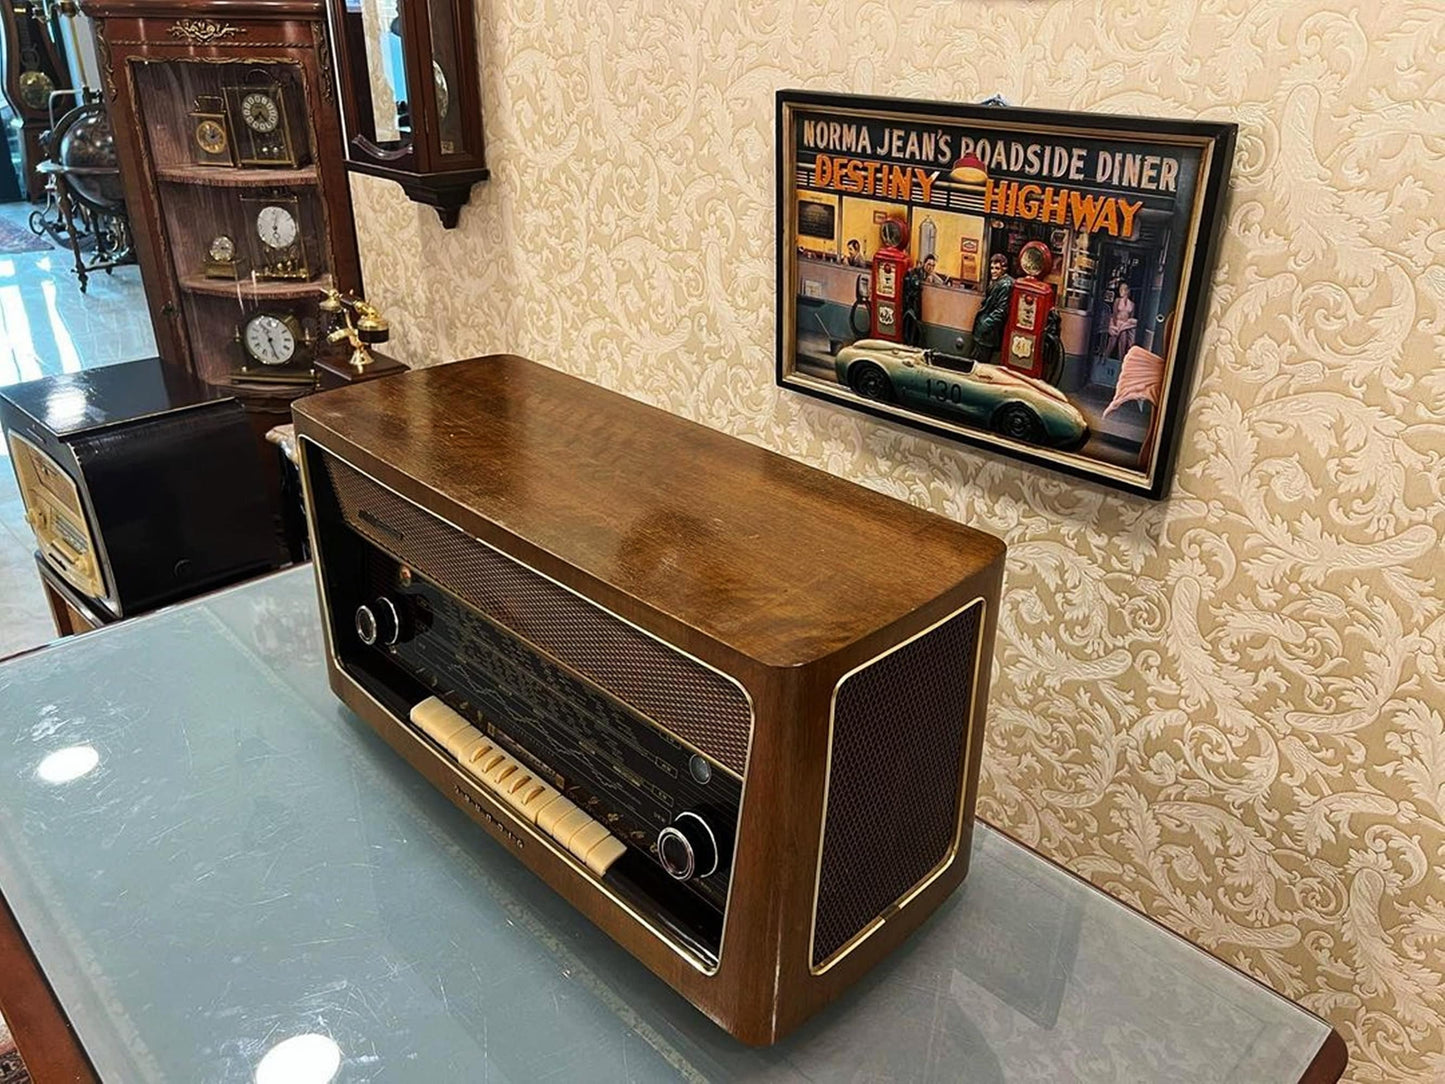 Grundig 4090 Vintage Radio | Orjinal Old Radio | Lamp Radio